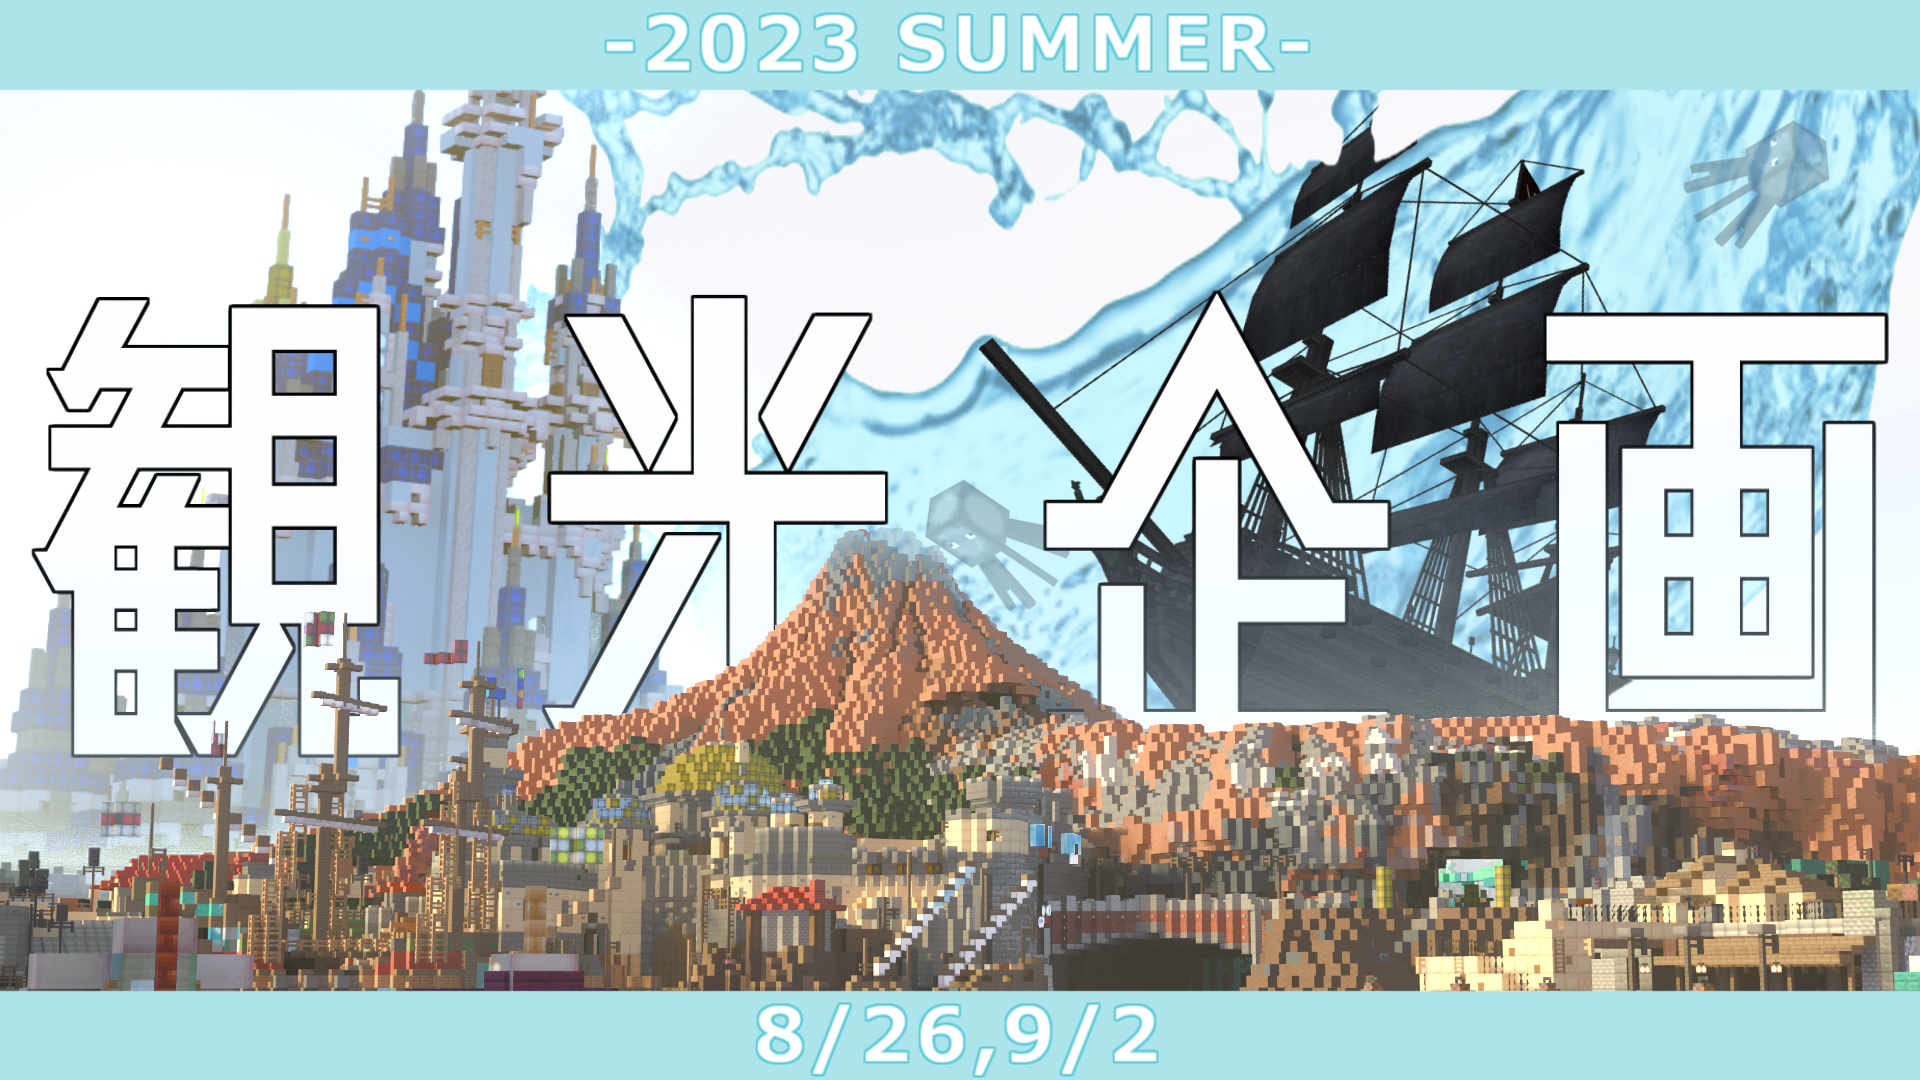 観光企画「観光企画-2023 Summer-」を開催！